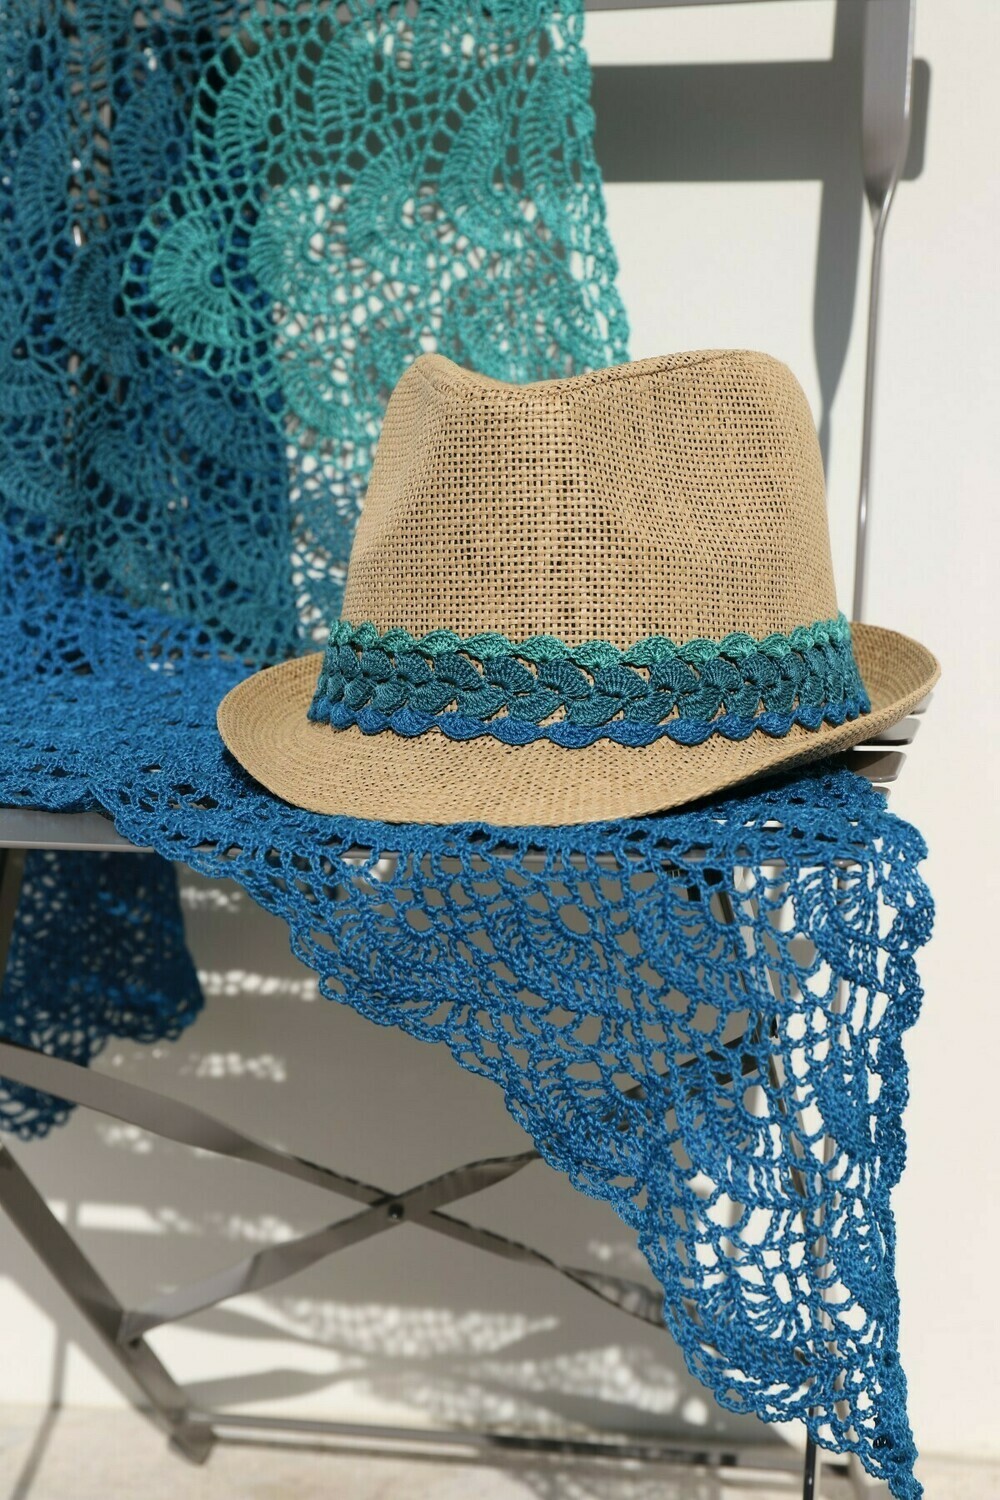 Acqua hat trim